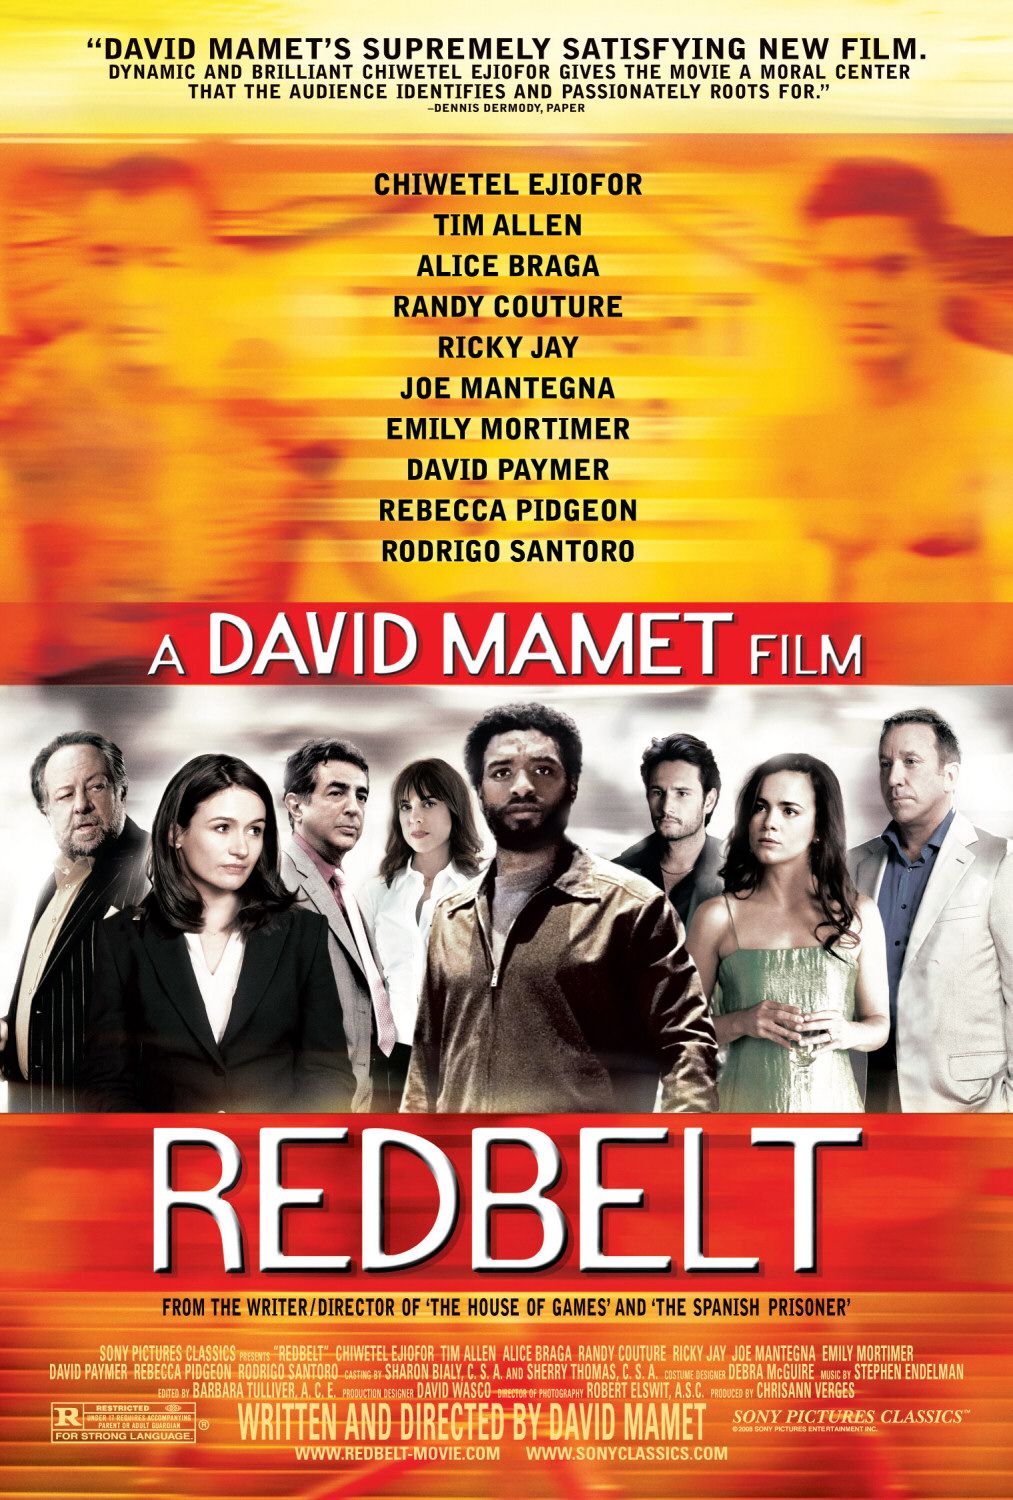 Redbelt (#2 of 2): Extra Large Movie Poster Image - IMP Awards